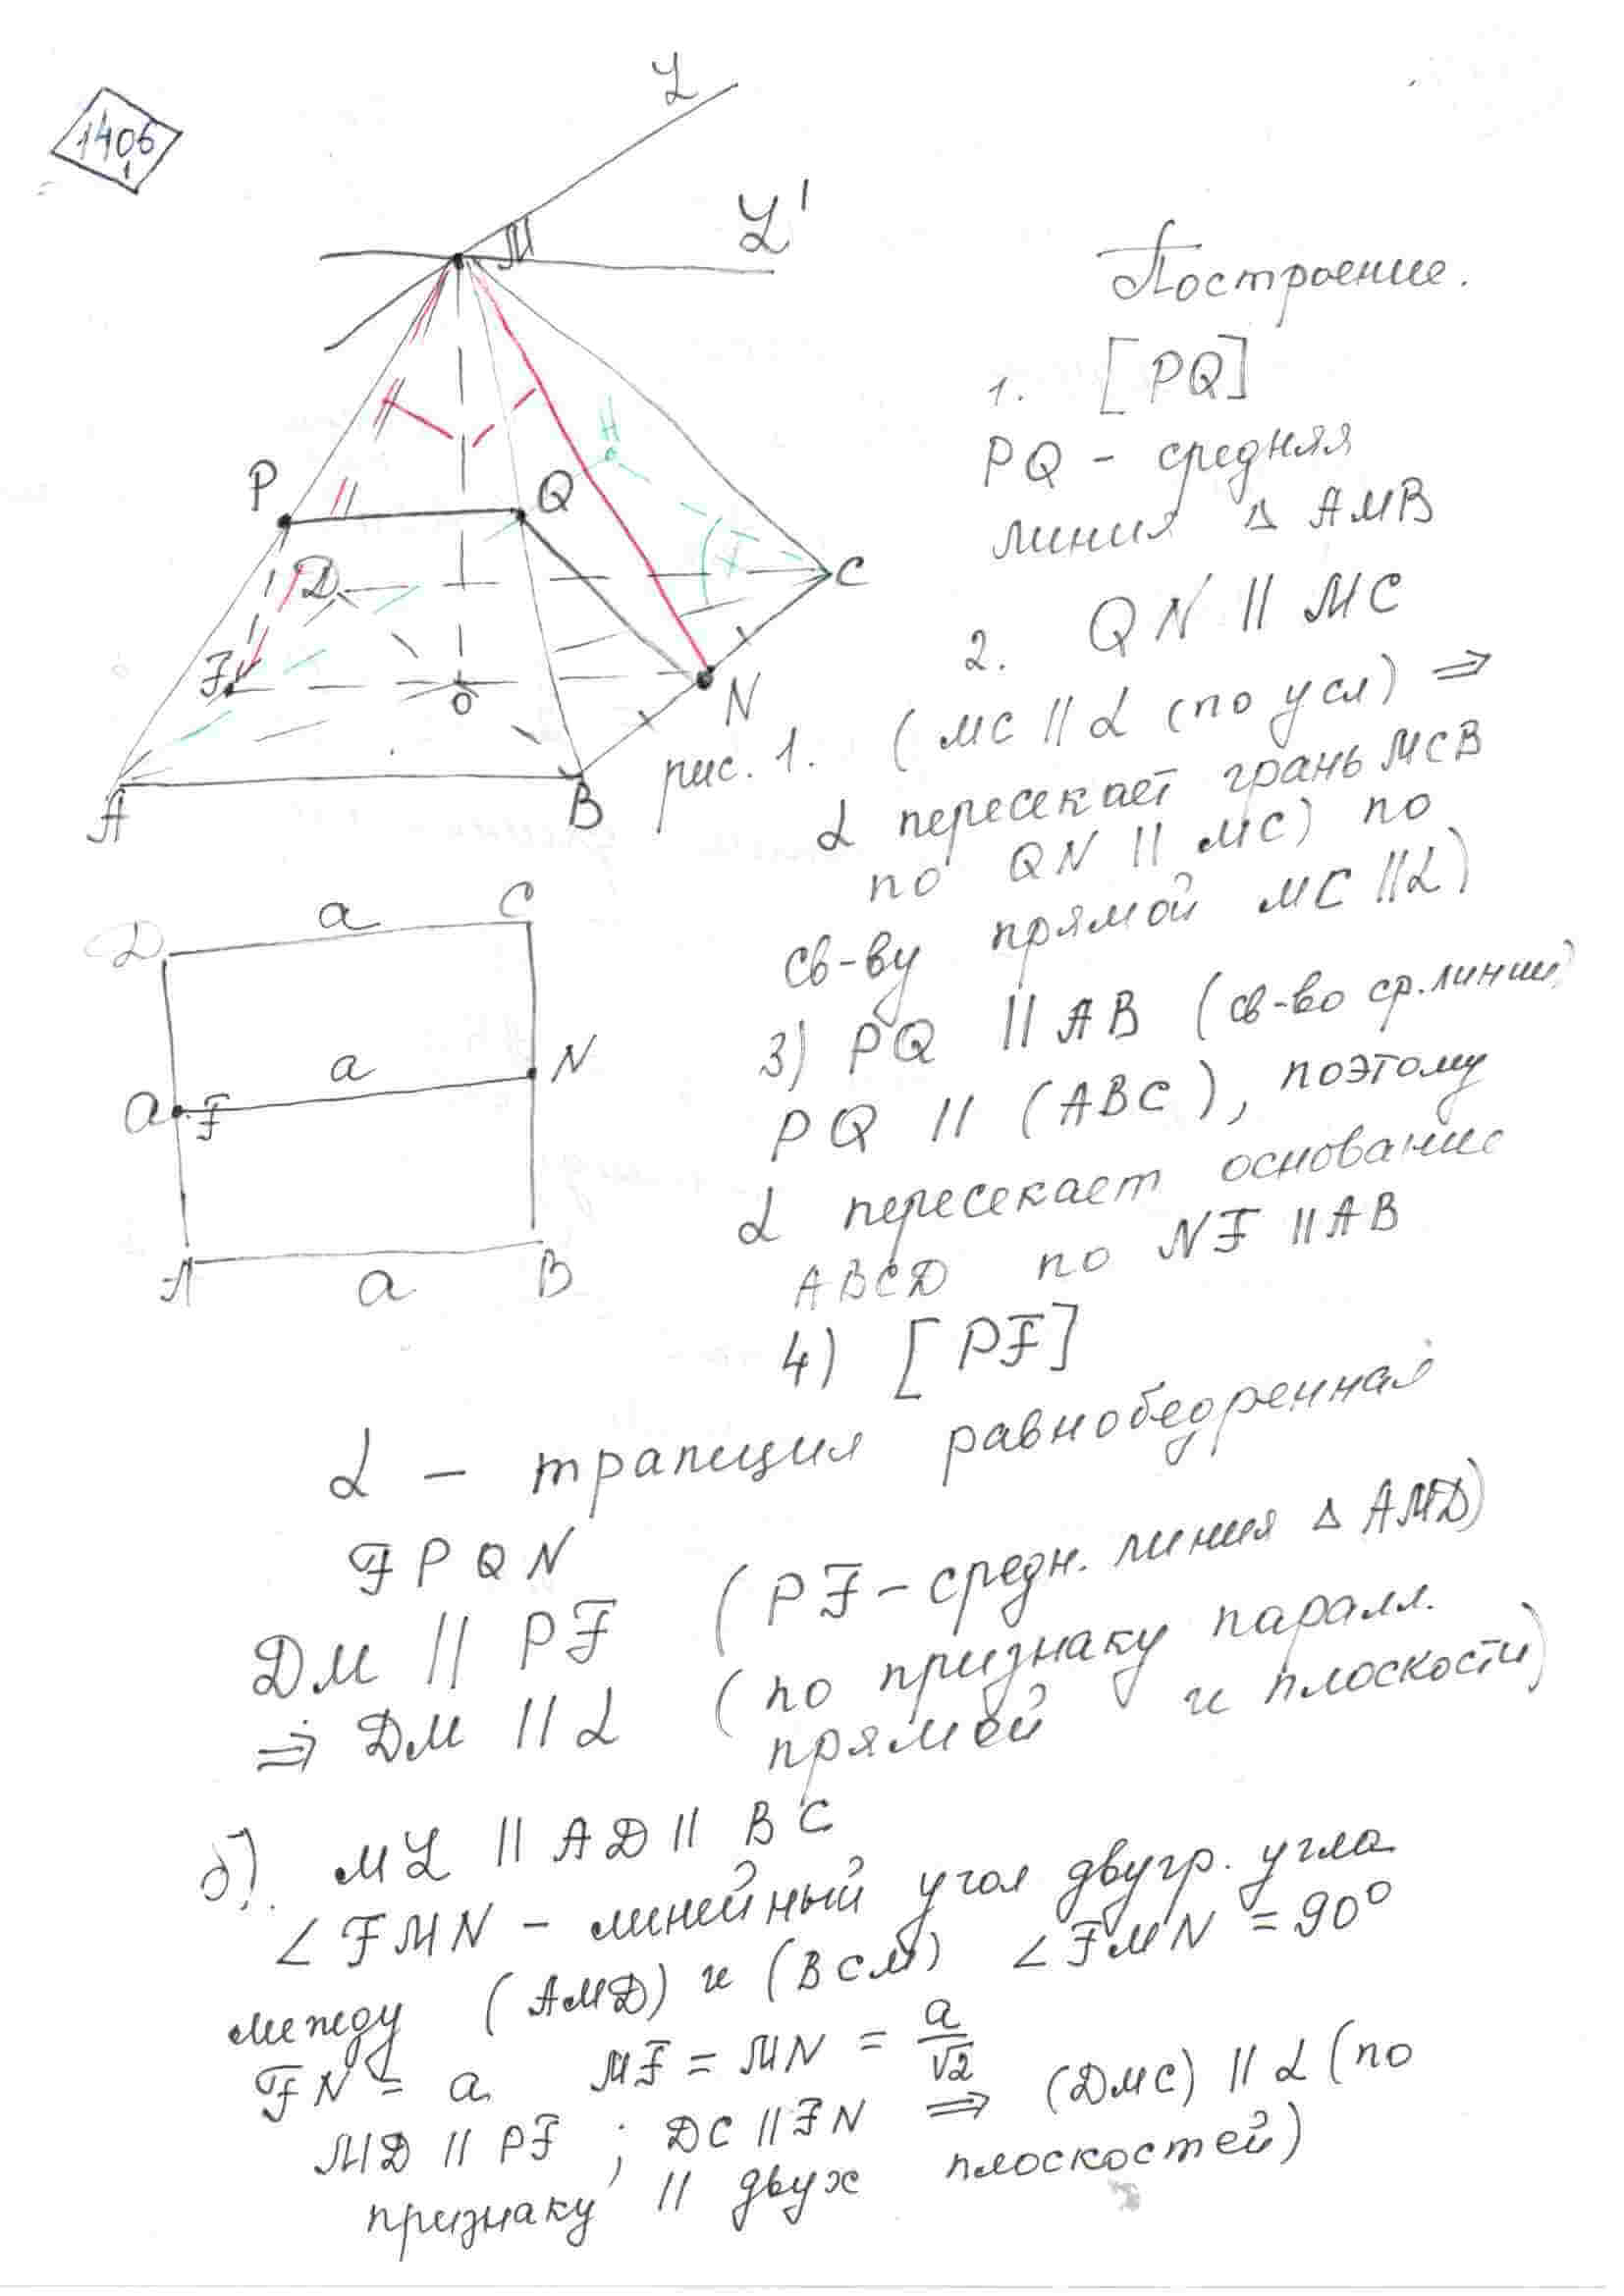 Основание пирамида мавсд квадрат со сторонами. Противоположные ребра пирамиды попарно перпендикулярны. Противоположные боковые грани правильной четырехугольной пирамиды. Пирамида MABCD. Правильная четырехугольная пирамида MABCD.